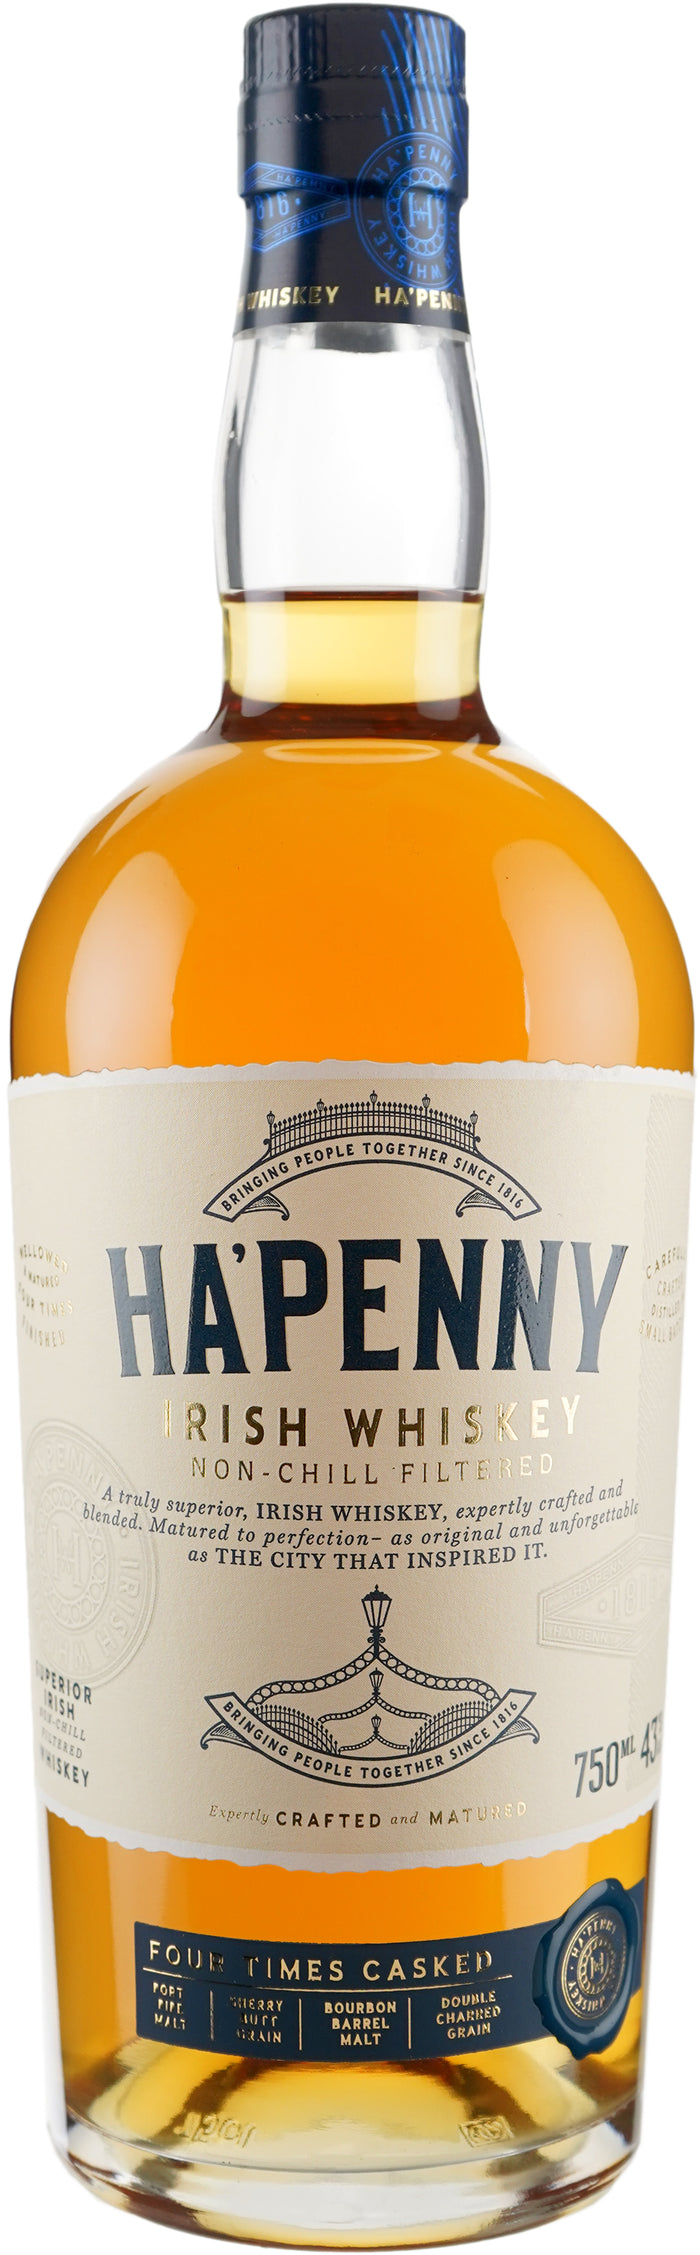 Ha' Penny Irish Whiskey